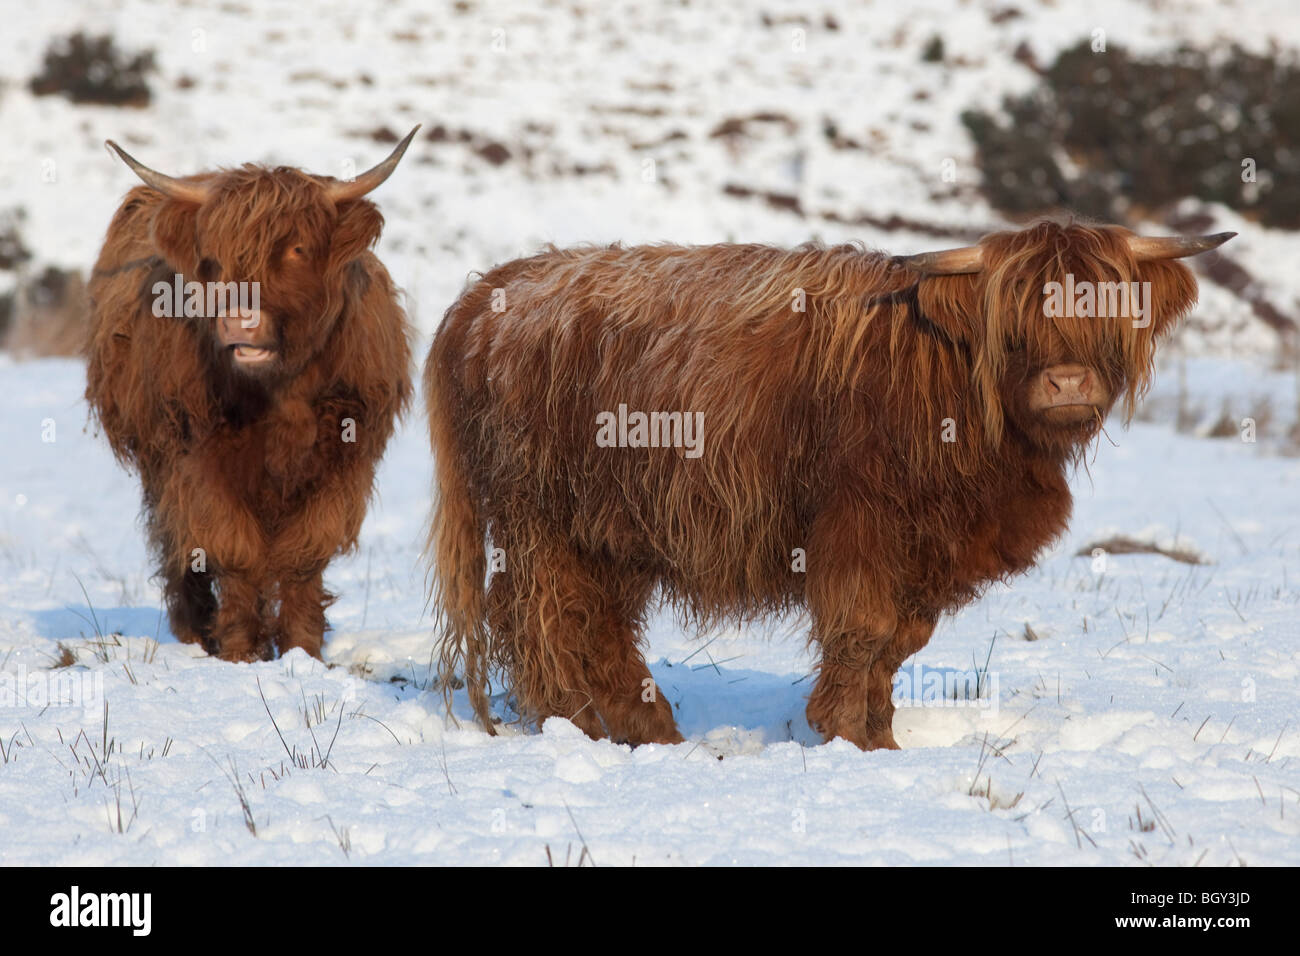 Les vaches Highland dans la neige, montagnes de l'Ecosse, Royaume-Uni Banque D'Images